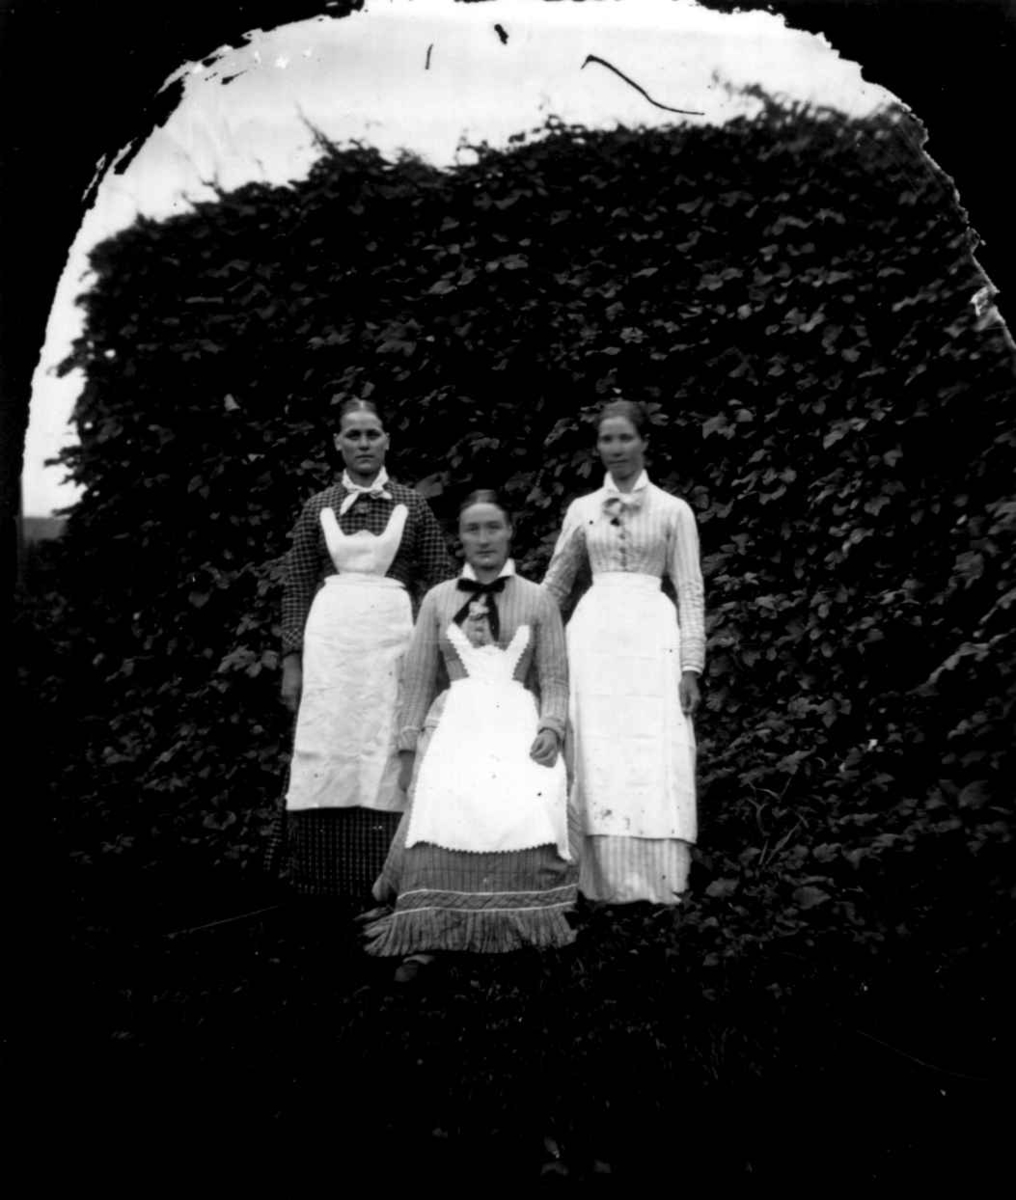 Tjenestepiker, Dal gård, Ullensaker, ca. 1879. Tre kvinner poserer i arbeidsdrakt.
Fra portrettserie av personer som bodde på eller besøkte Dal gård, Ullensaker, fotografert av gårdens eier, kammerherre Fredrik Emil Faye (1844-1903) i årene 1875-1900.